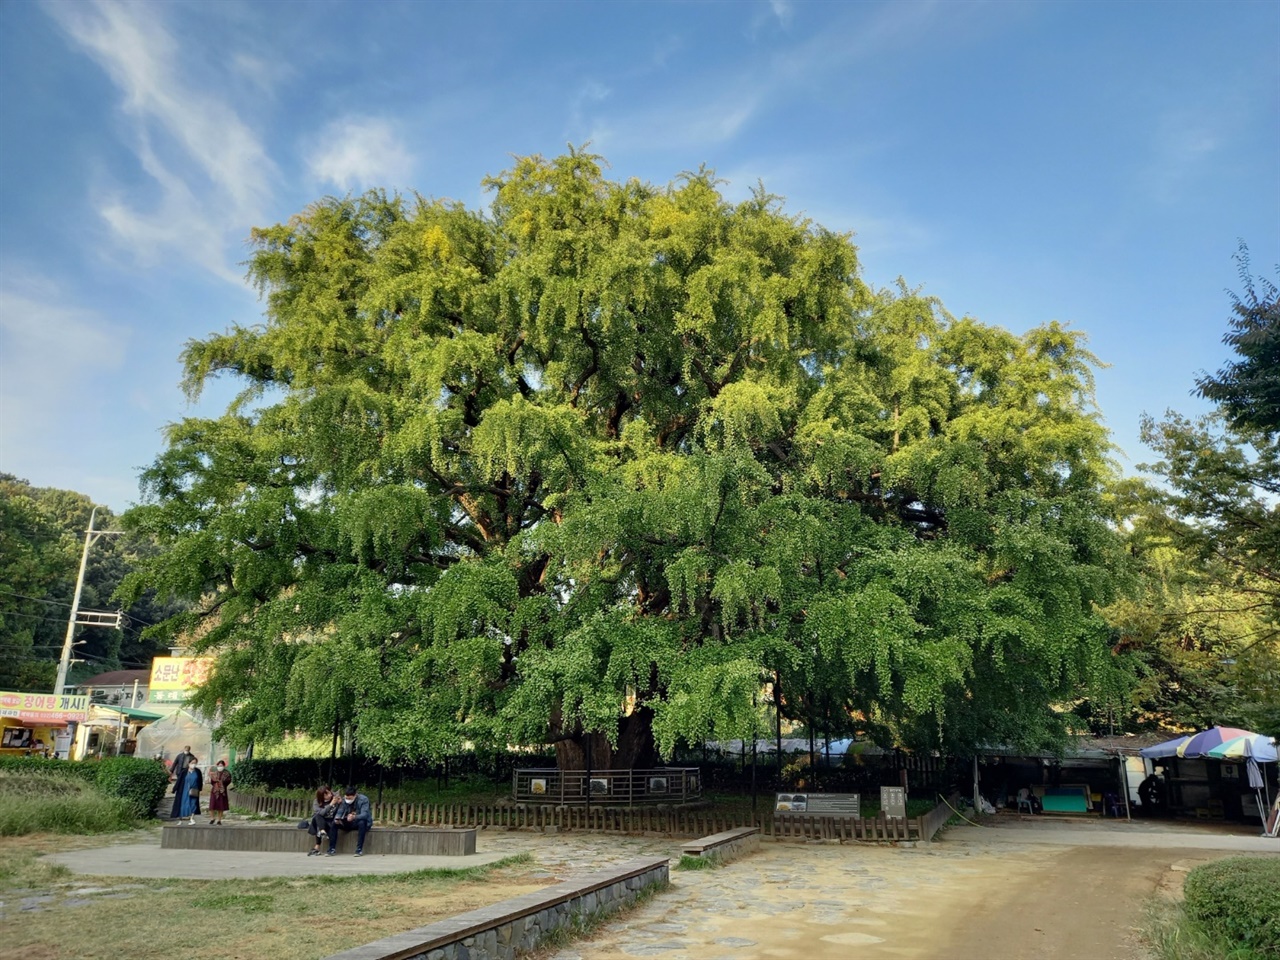 인천대공원 뒷편에 있는 은행나무. 수령이 800년 이상인 것으로 알려졌다. 정수리가 제법 노랗게 물들었다. 